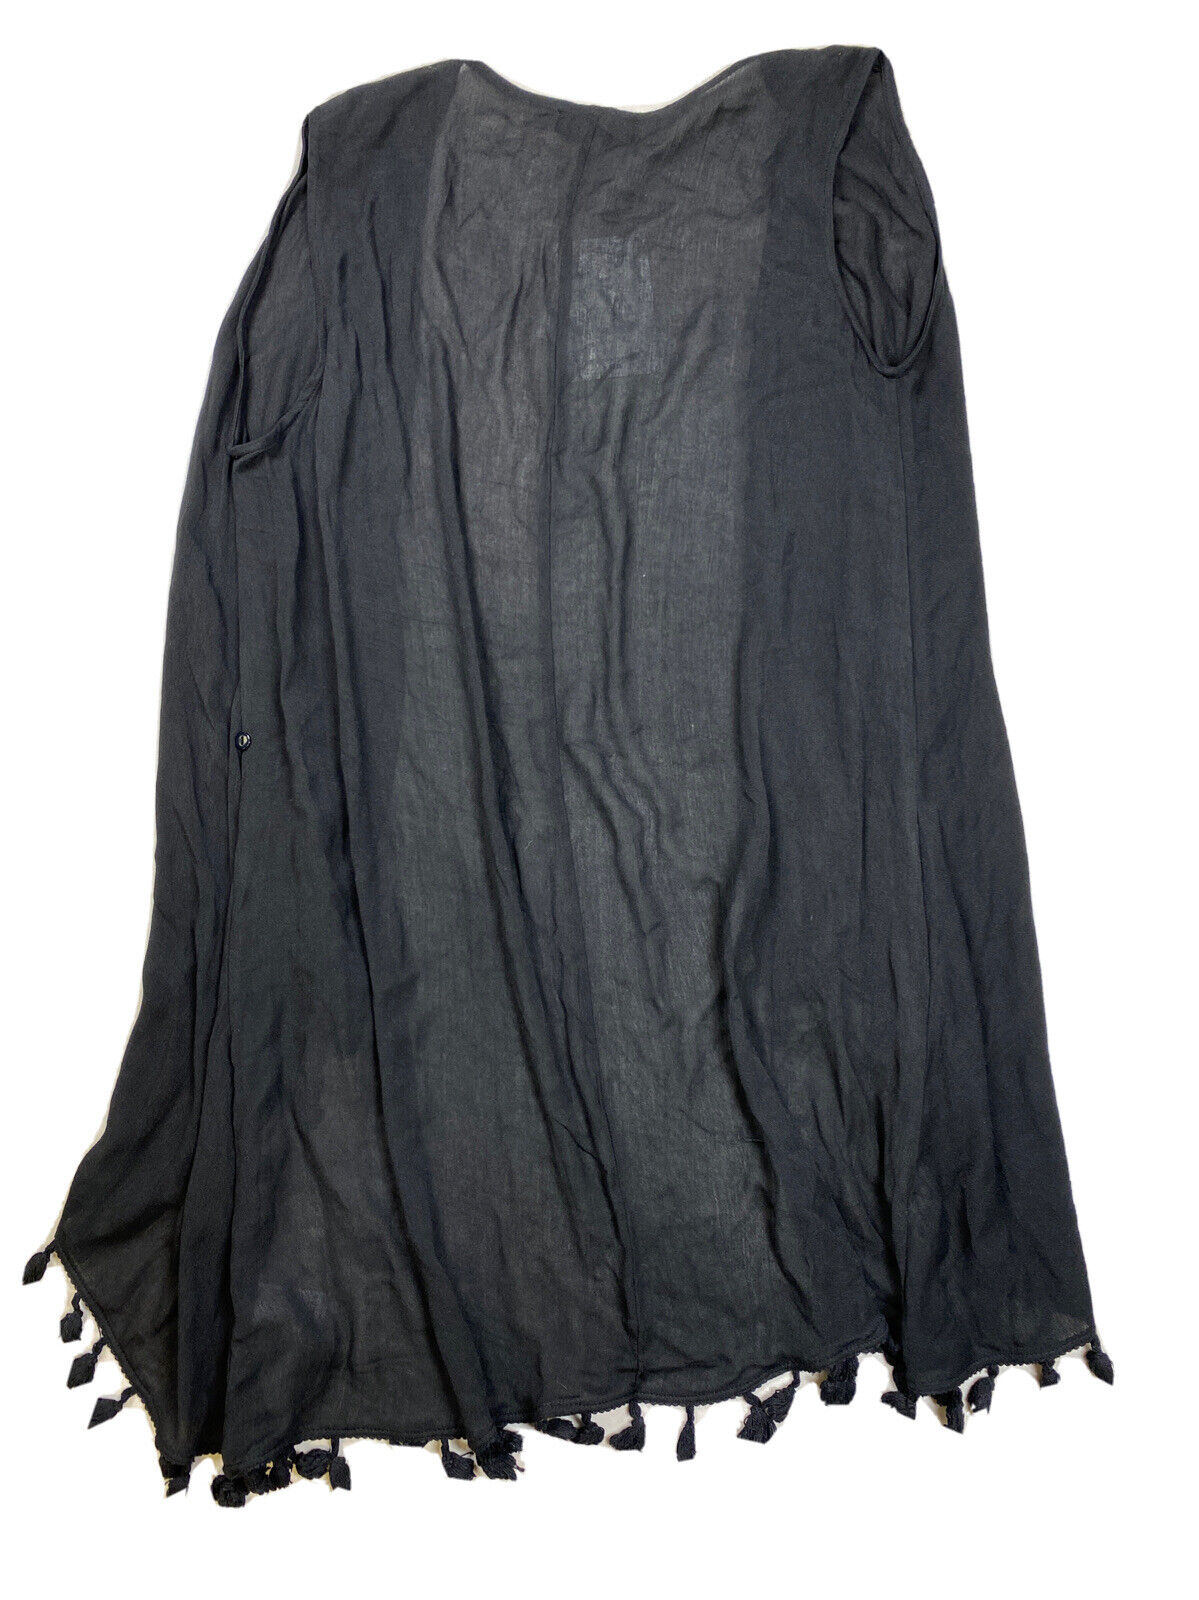 NEW Athena Women's Black Sleeveless Tassel Swim Cover Duster - M